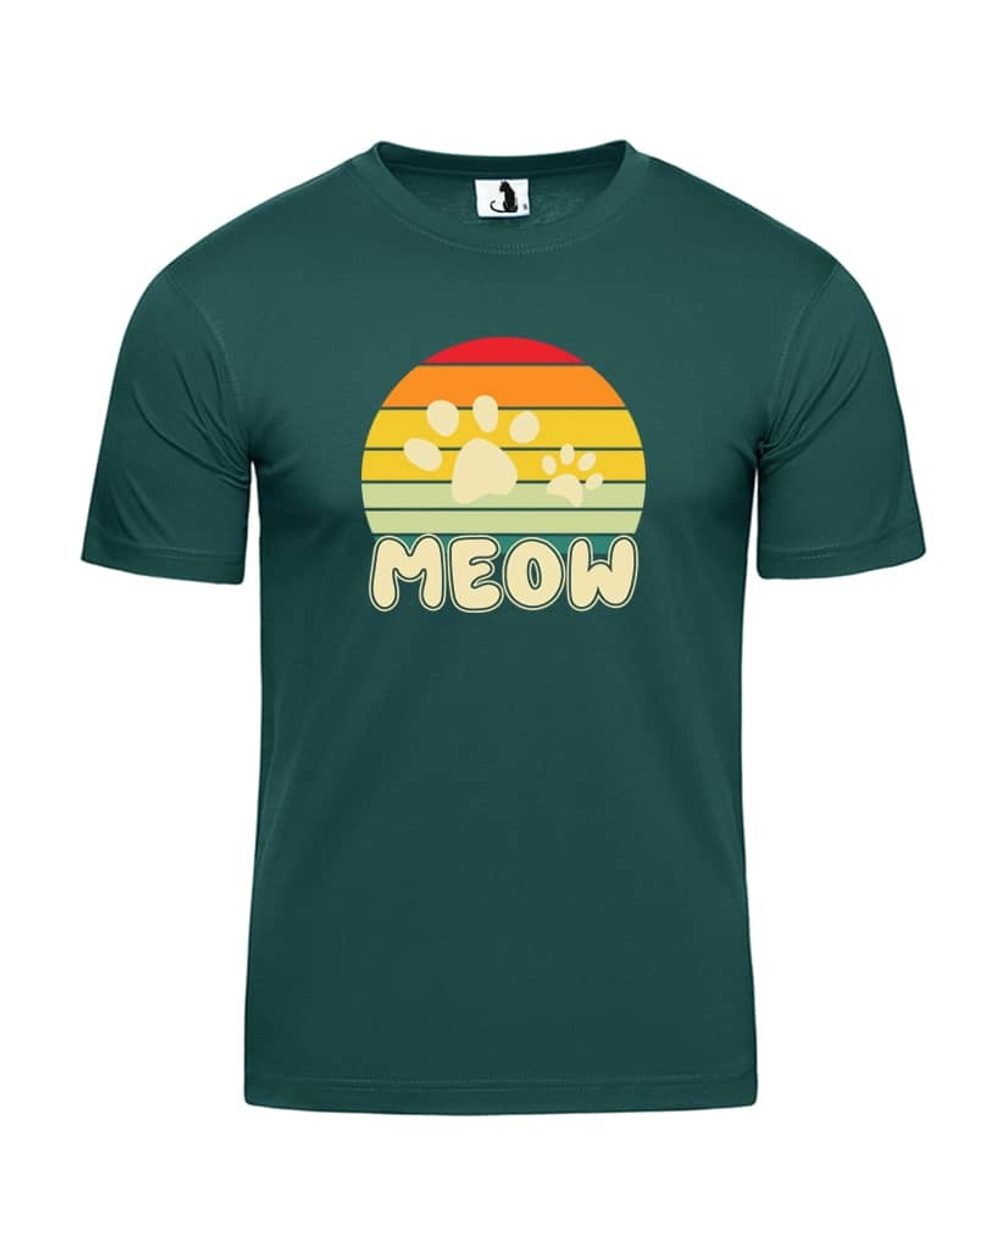 Футболка Meow классическая прямая темно-зеленая